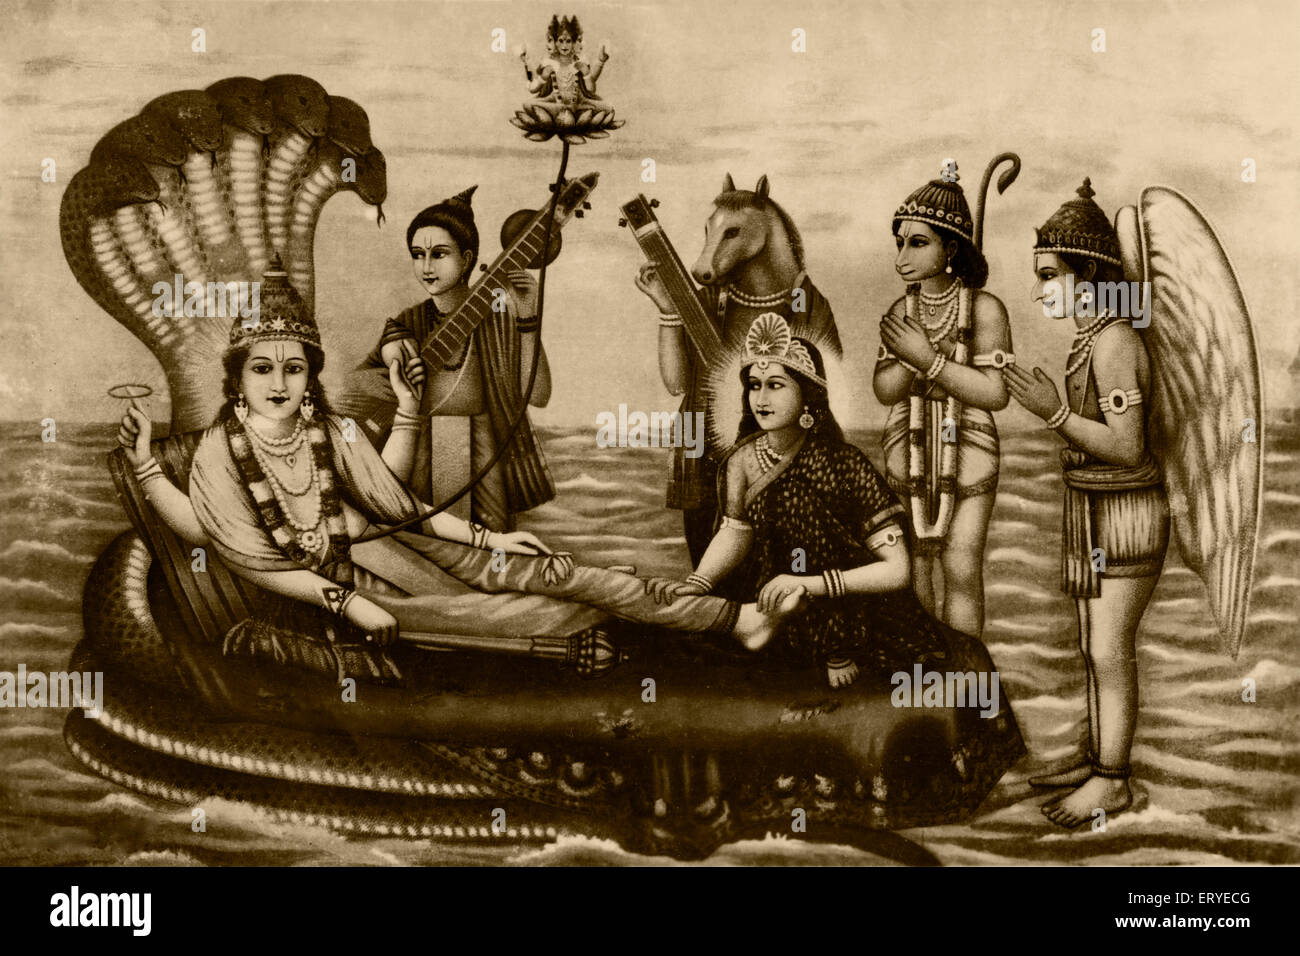 Herr Vishnu liegt auf riesigen sieben Kopf Schlange Sheshanaga und Göttin Lakshmi drückt seine Füße, Indien, Asien, alte vintage 1800s Bild Stockfoto